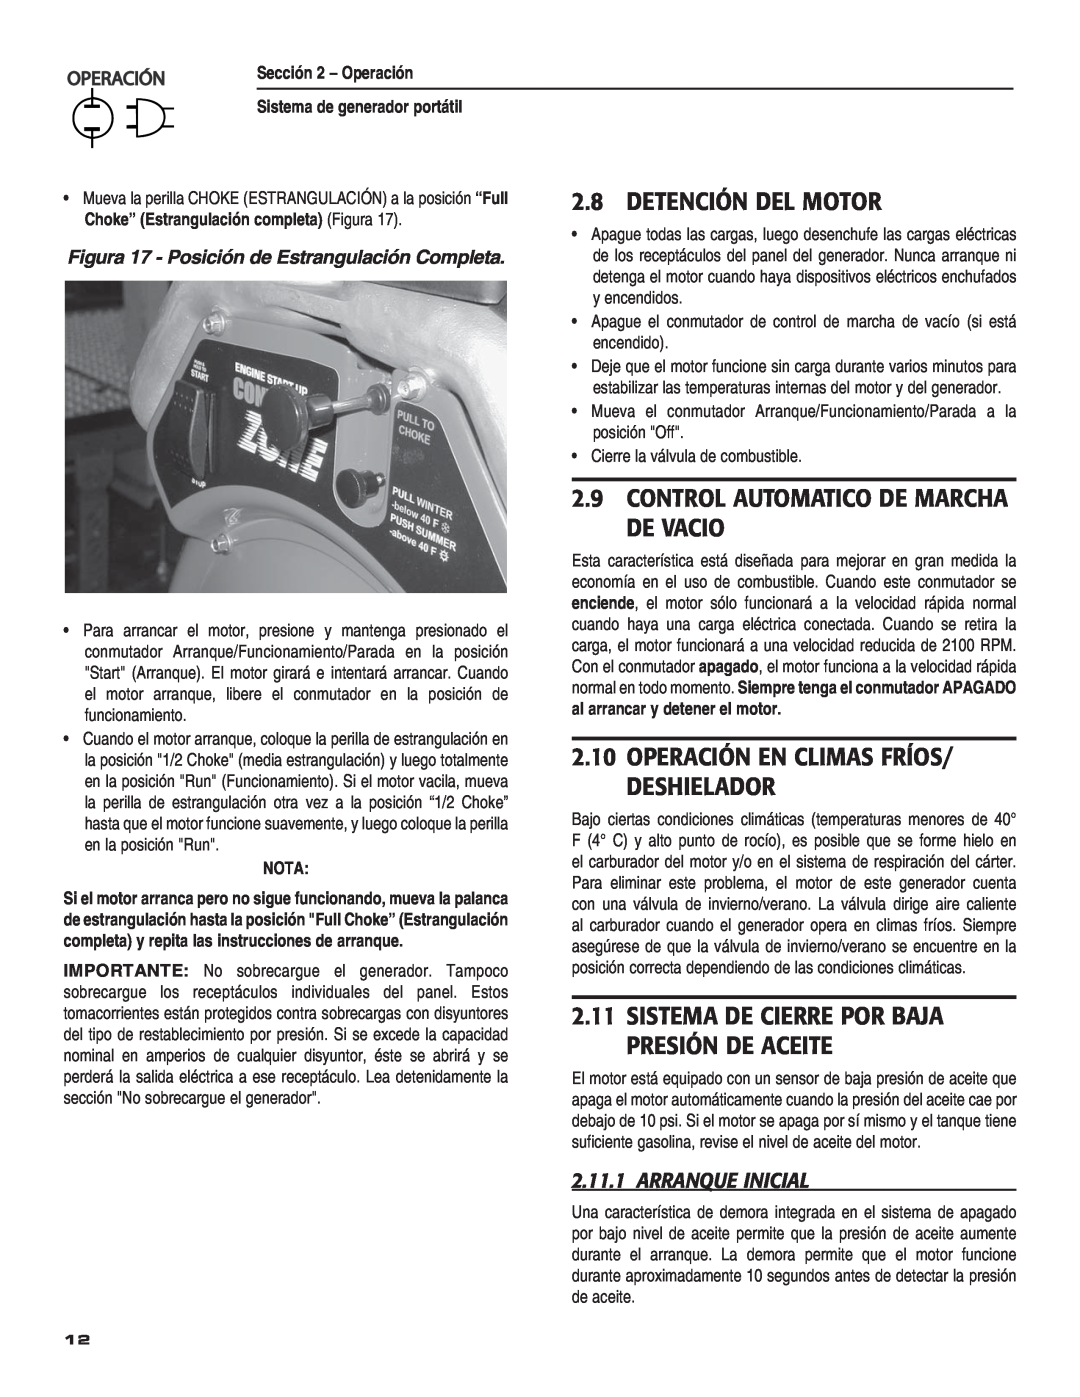 Guardian Technologies 004583-0 Detención Del Motor, Control Automatico De Marcha De Vacio, Arranque Inicial, 0%2!#œ, Nota 